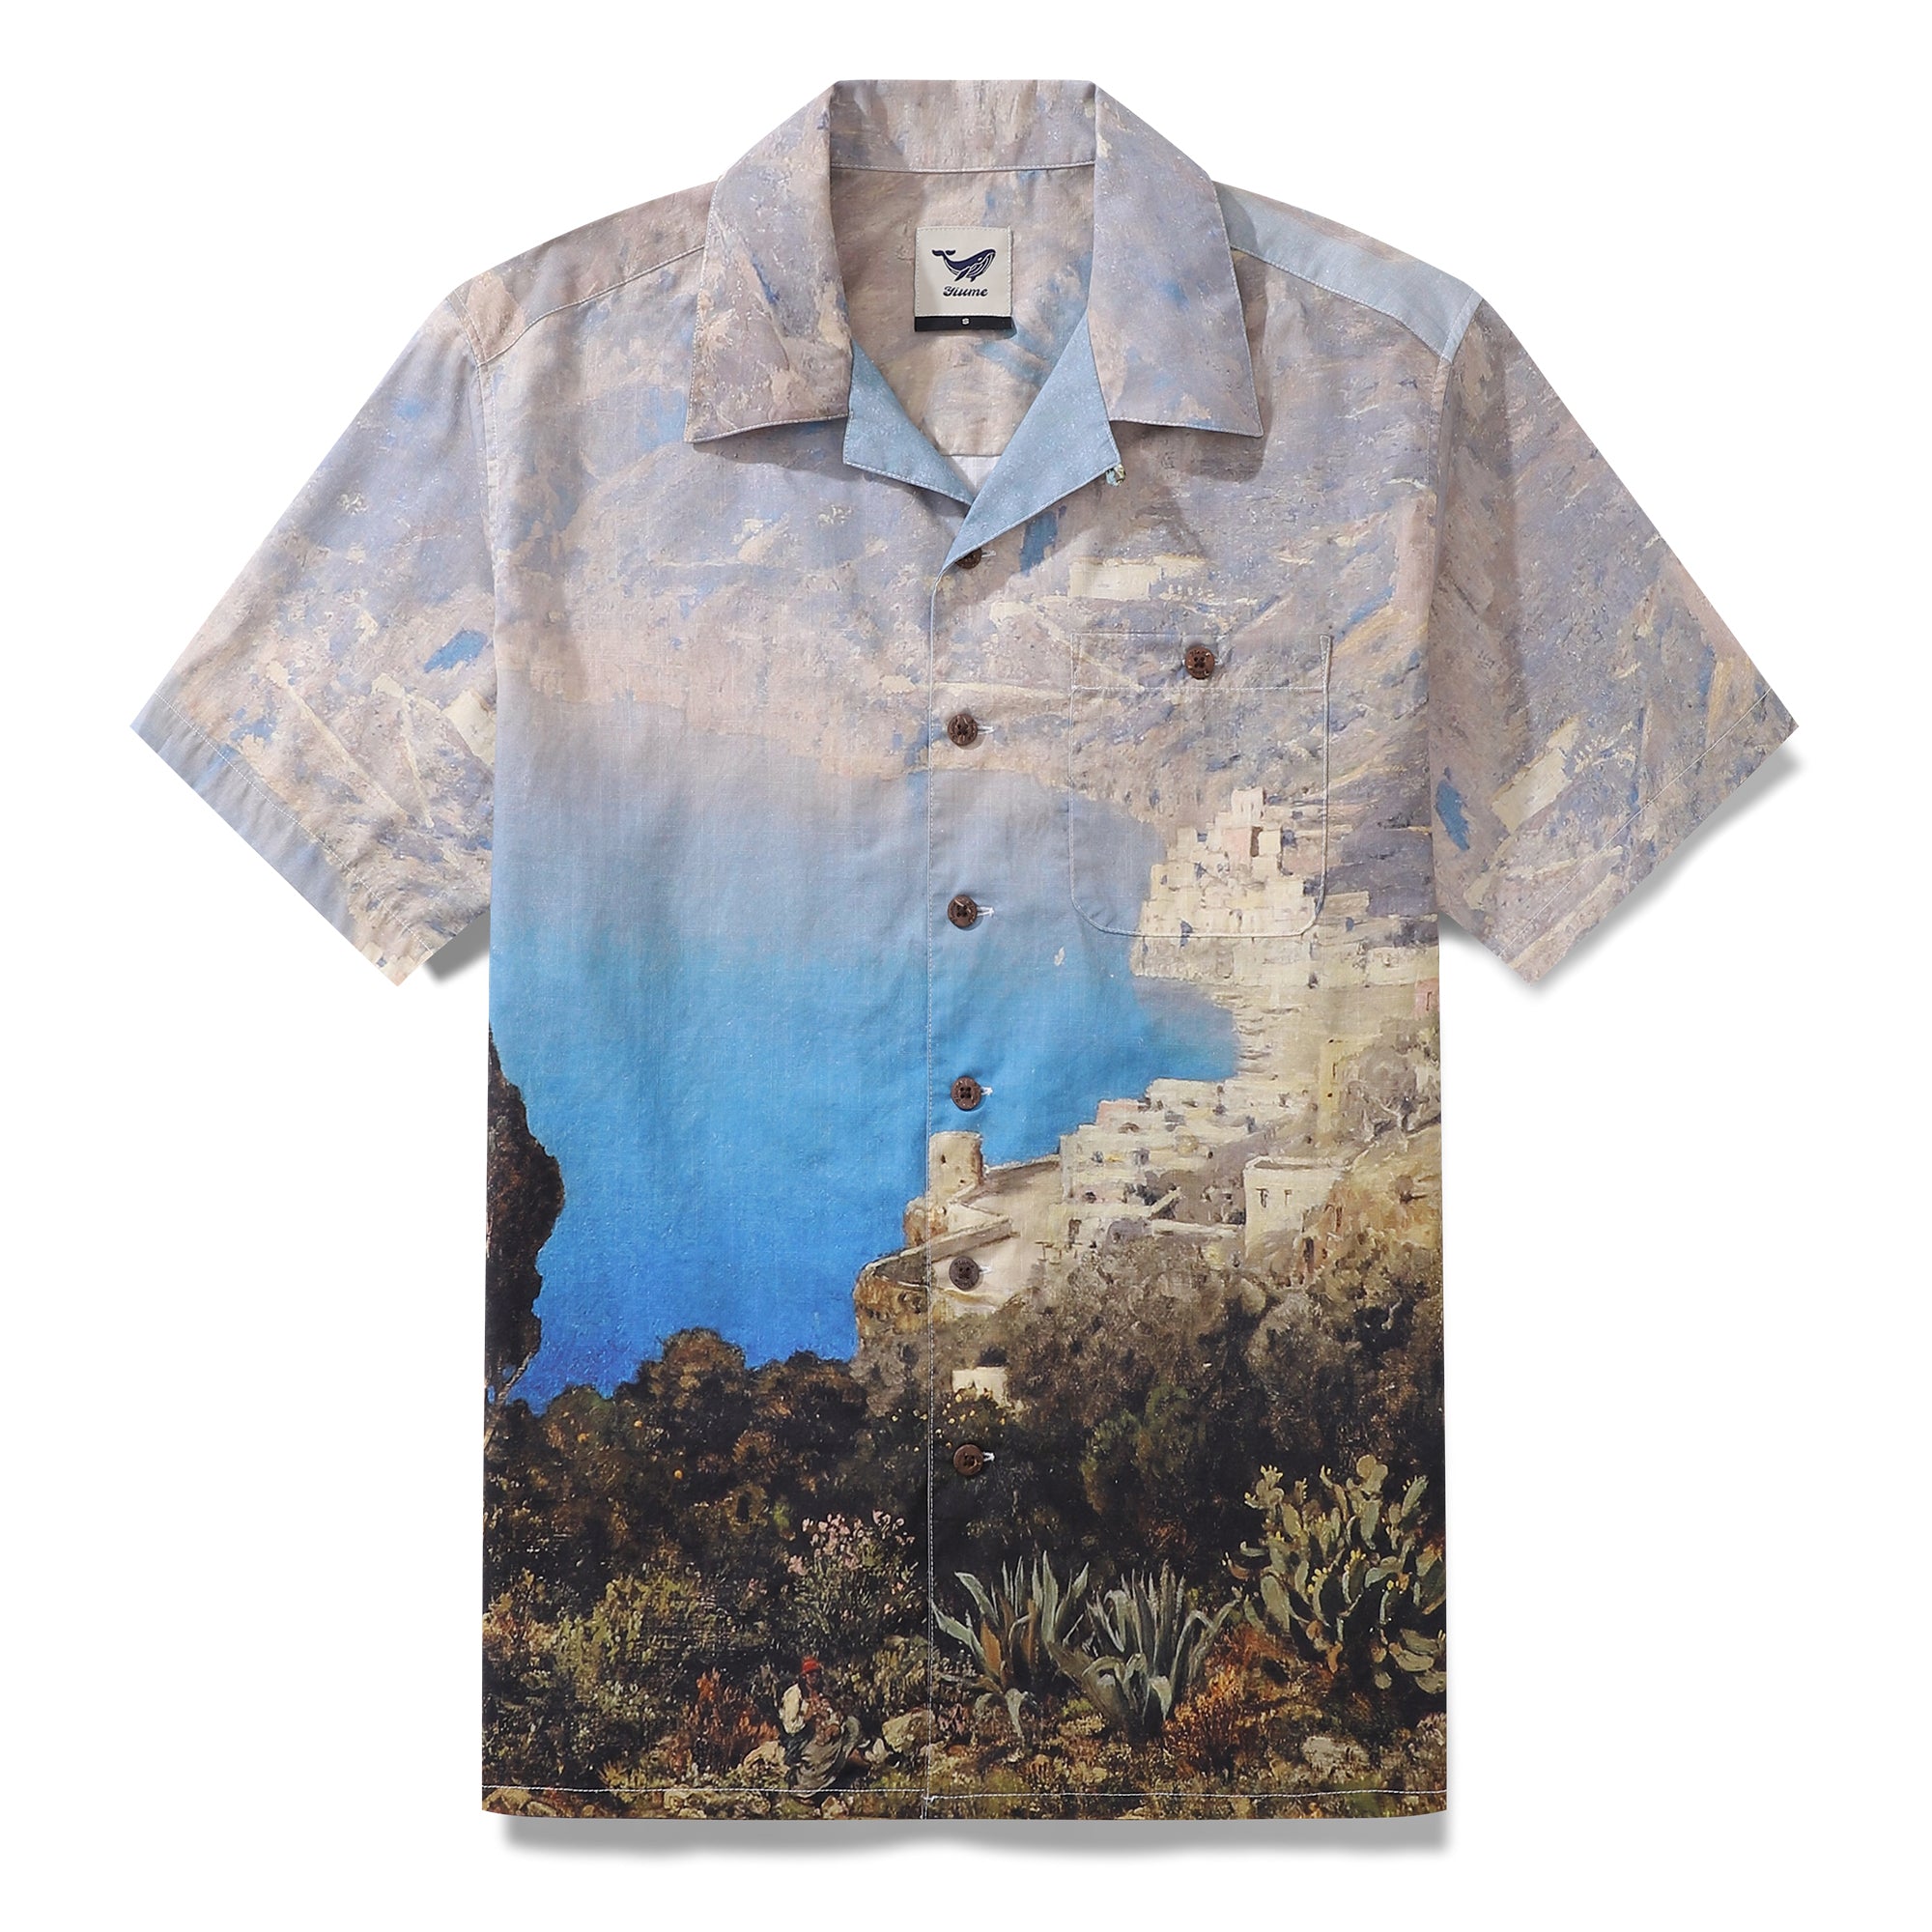 1950s Vintage Hawaiian Shirt For Men Costa Sorrentina Shirt Camp Collar 100% Cotton